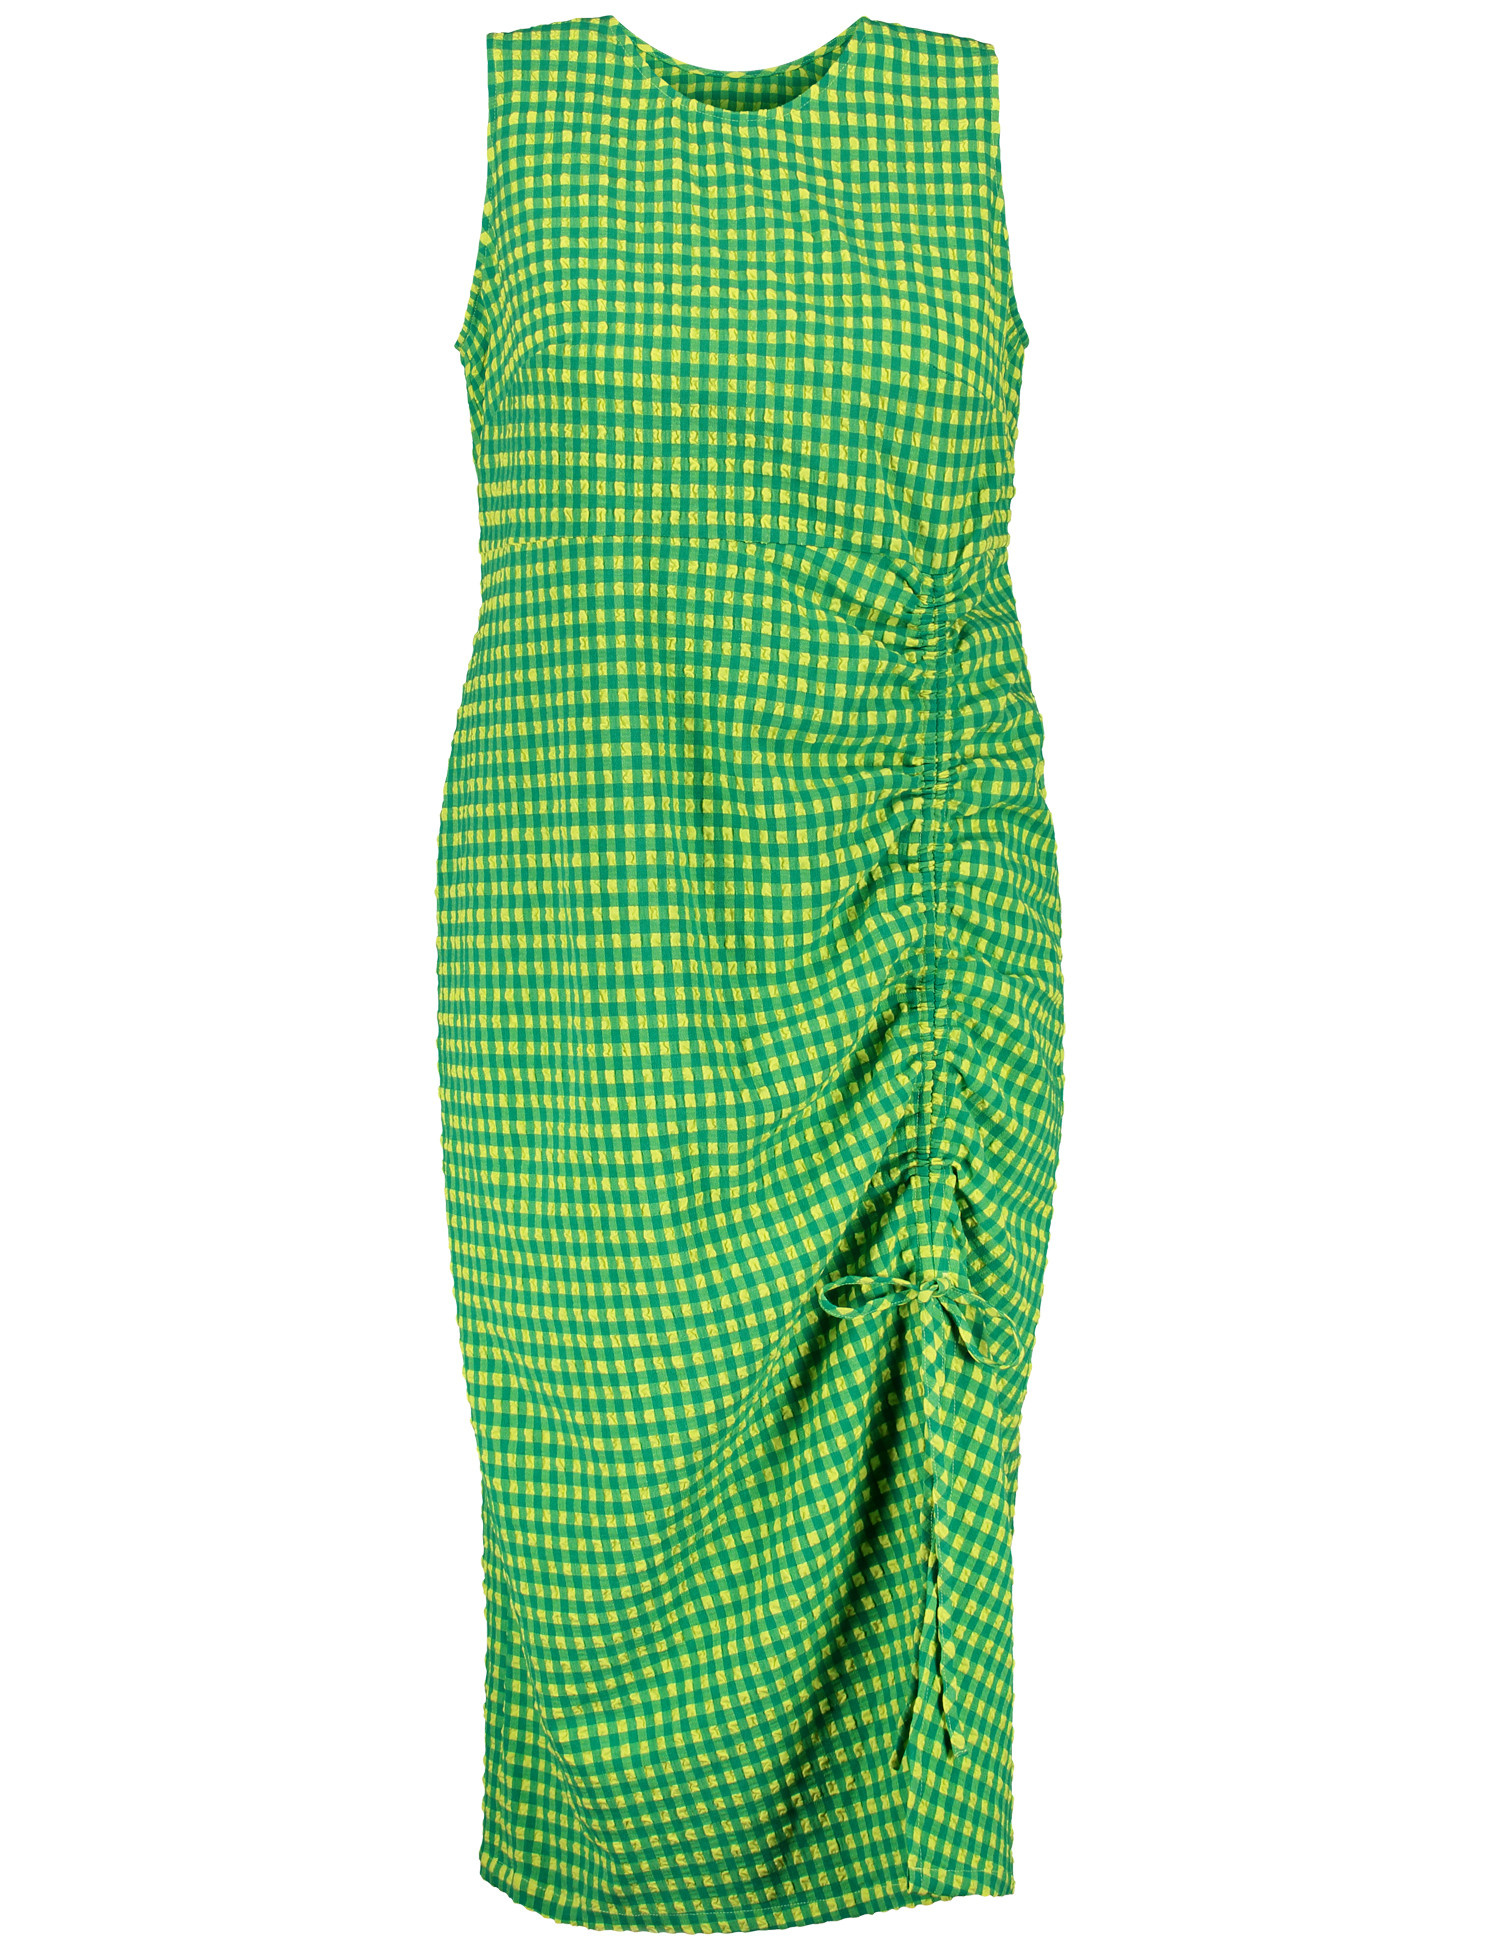 SAMOON Damen Ärmelloses Sommerkleid mit Schlitz Rundhals Grün kariert, 44 von SAMOON